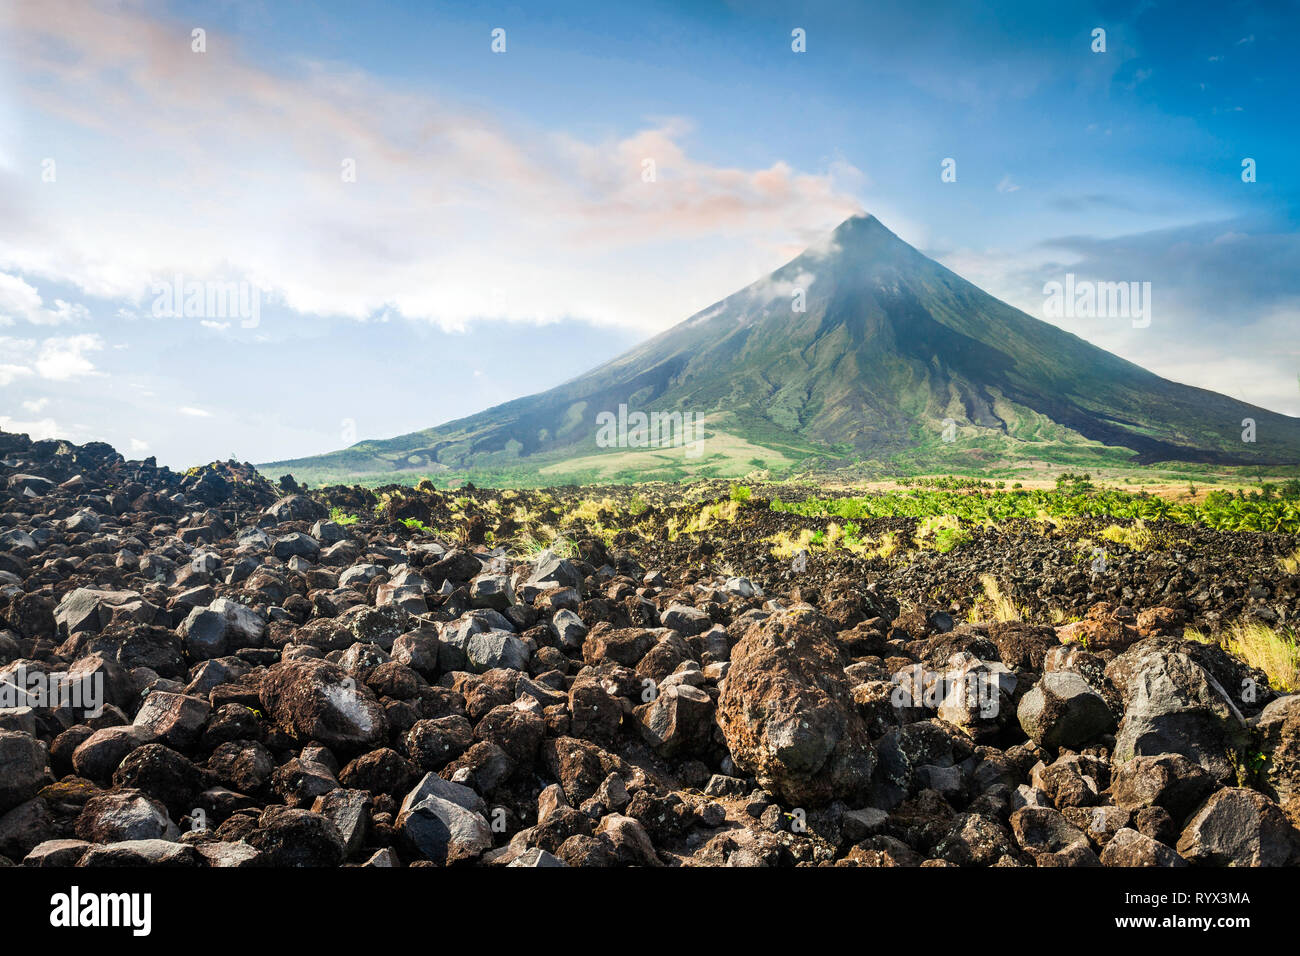 Volcán Mayon es un estratovolcán activo en Filipinas. Foto de stock